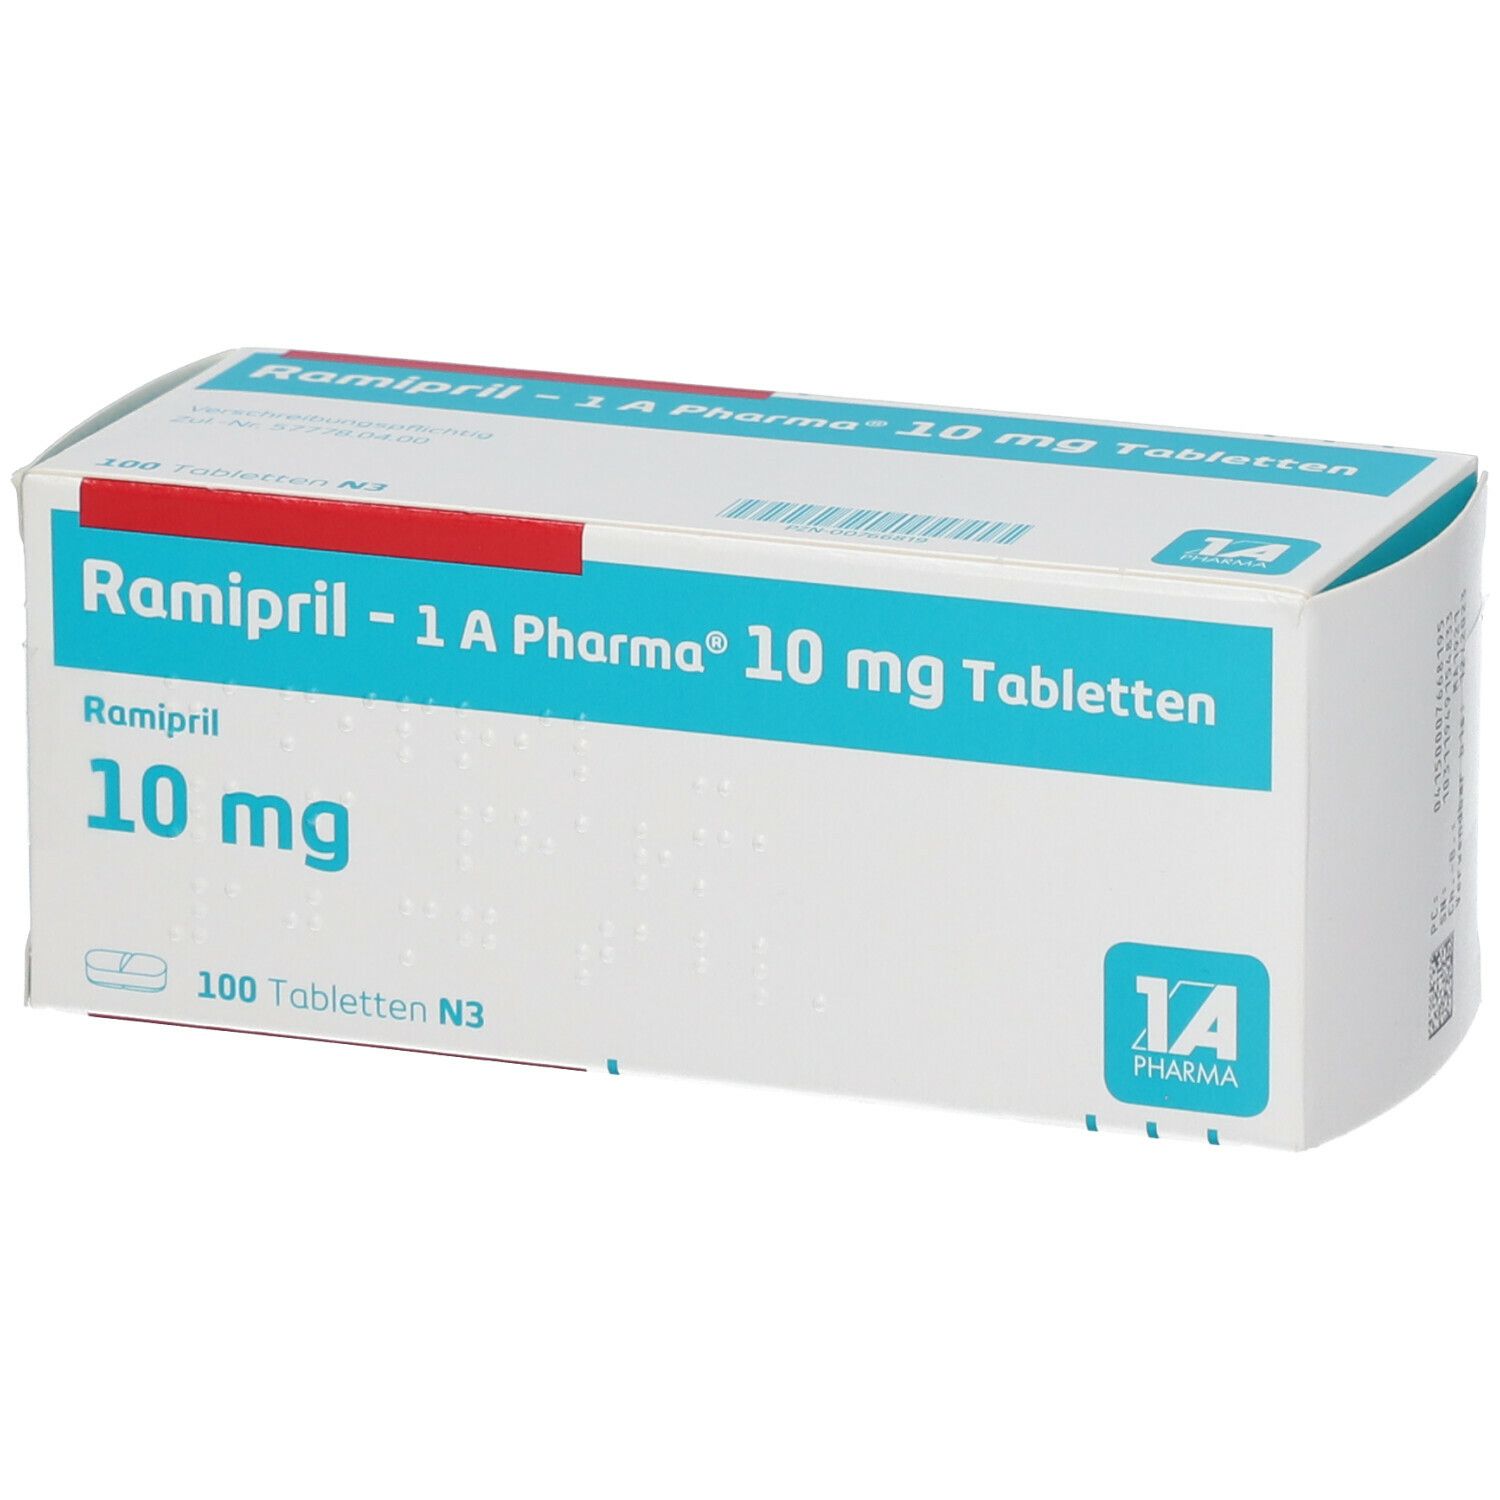 Ramipril 1A Pharma® 10 Mg